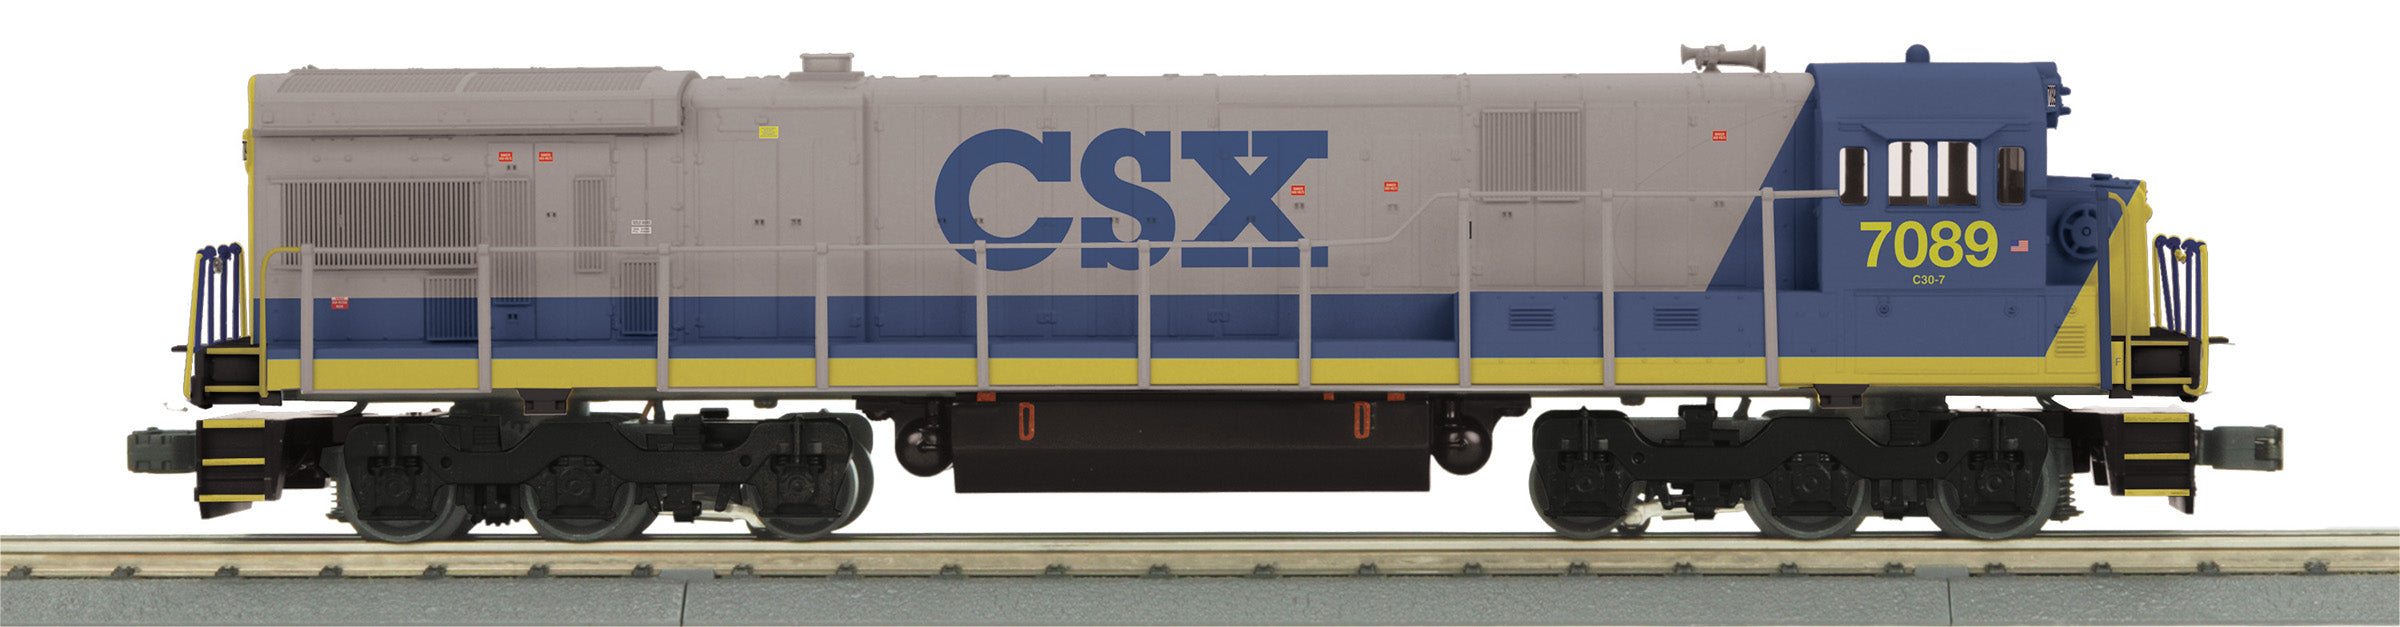 MTH 30-21266-1 - C30-7 Diesel Engine "CSX" #7089 w/ PS3